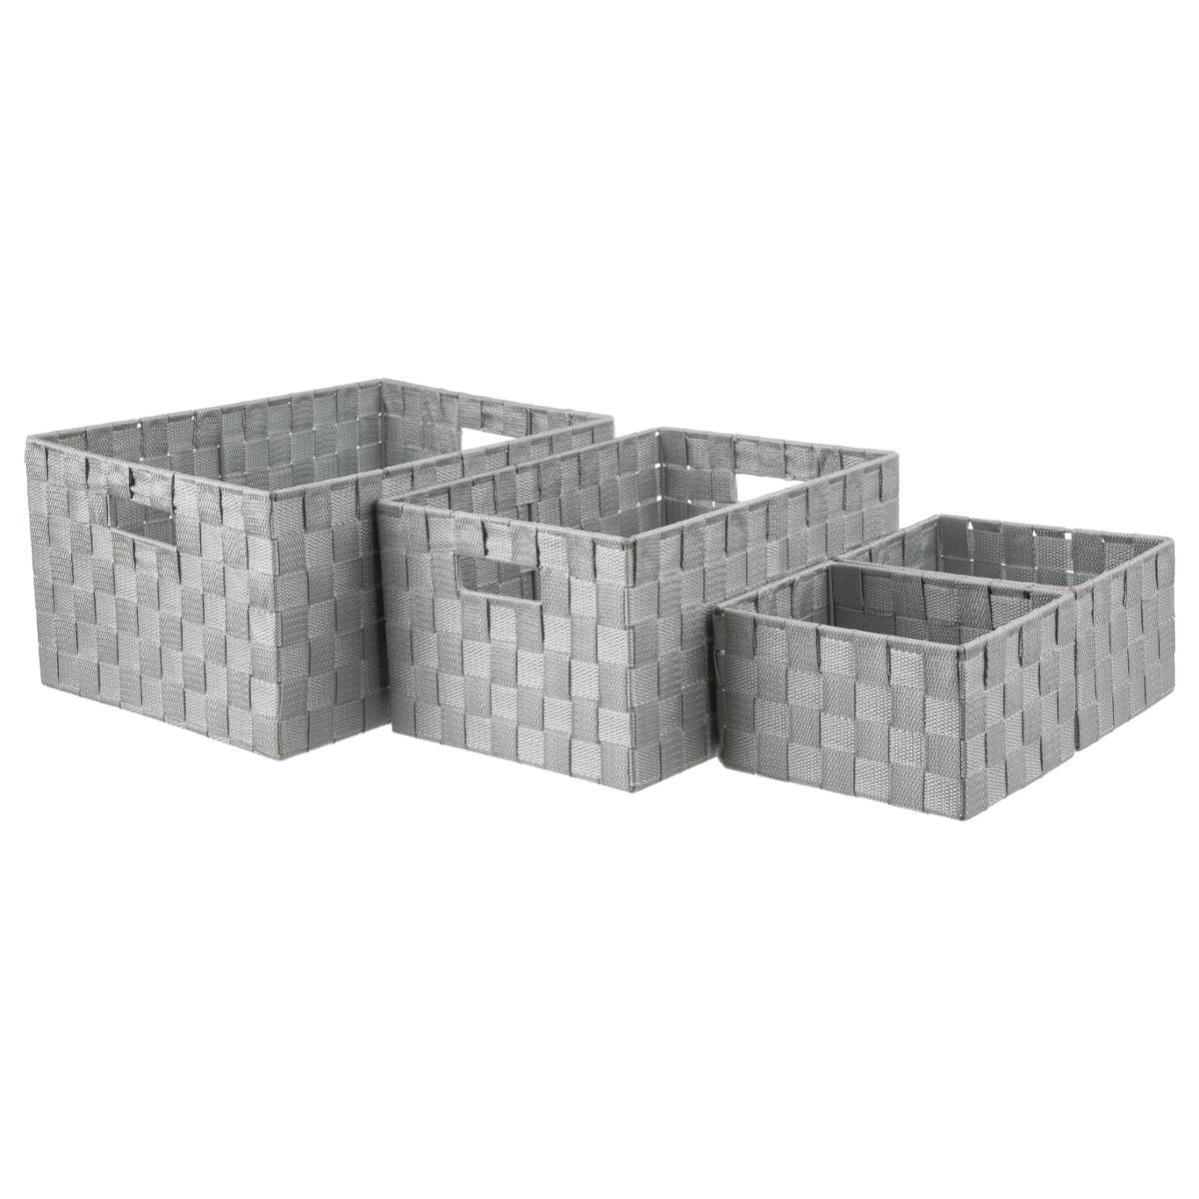 Sanixa GP02825 Lot de 4 paniers de rangement carrés en plastique Gris anthracite 